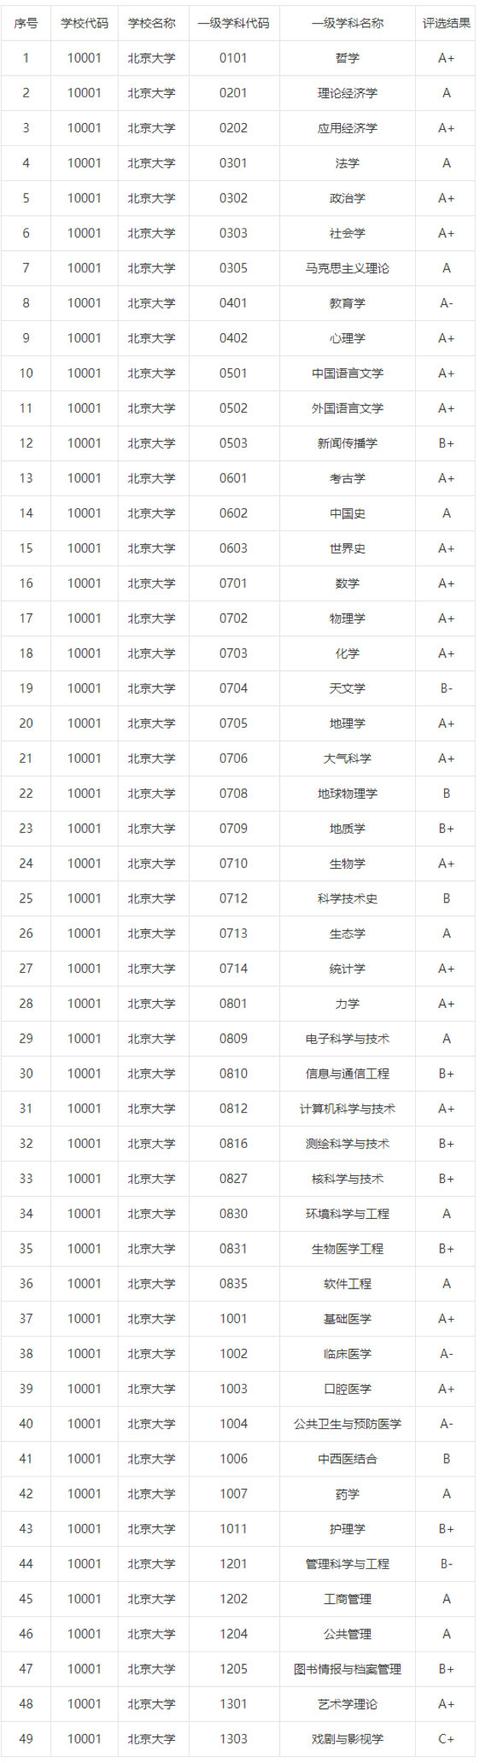 共有108个学科,其中北京大学41个学科进入名单,入选数量居全国高校之